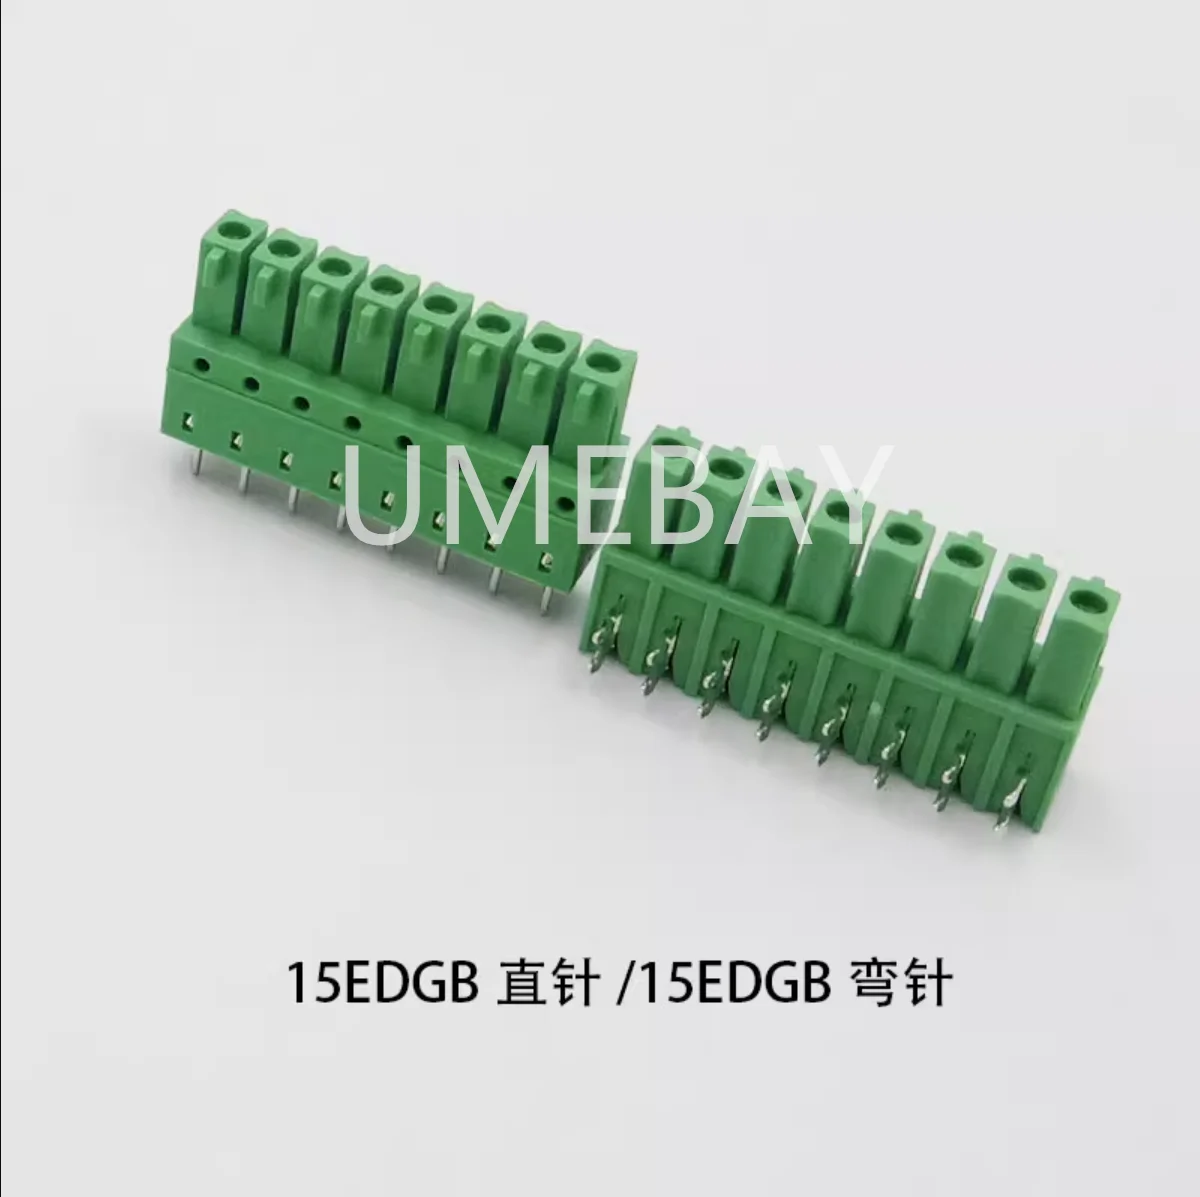 5TK 15EDGA KF2EDGA/KF2EDGB maksumuses 3,81 mm plug-in PCB vooluühendus 9P10P11P12P13P14P15P16P painutatud pin-koodi - 0